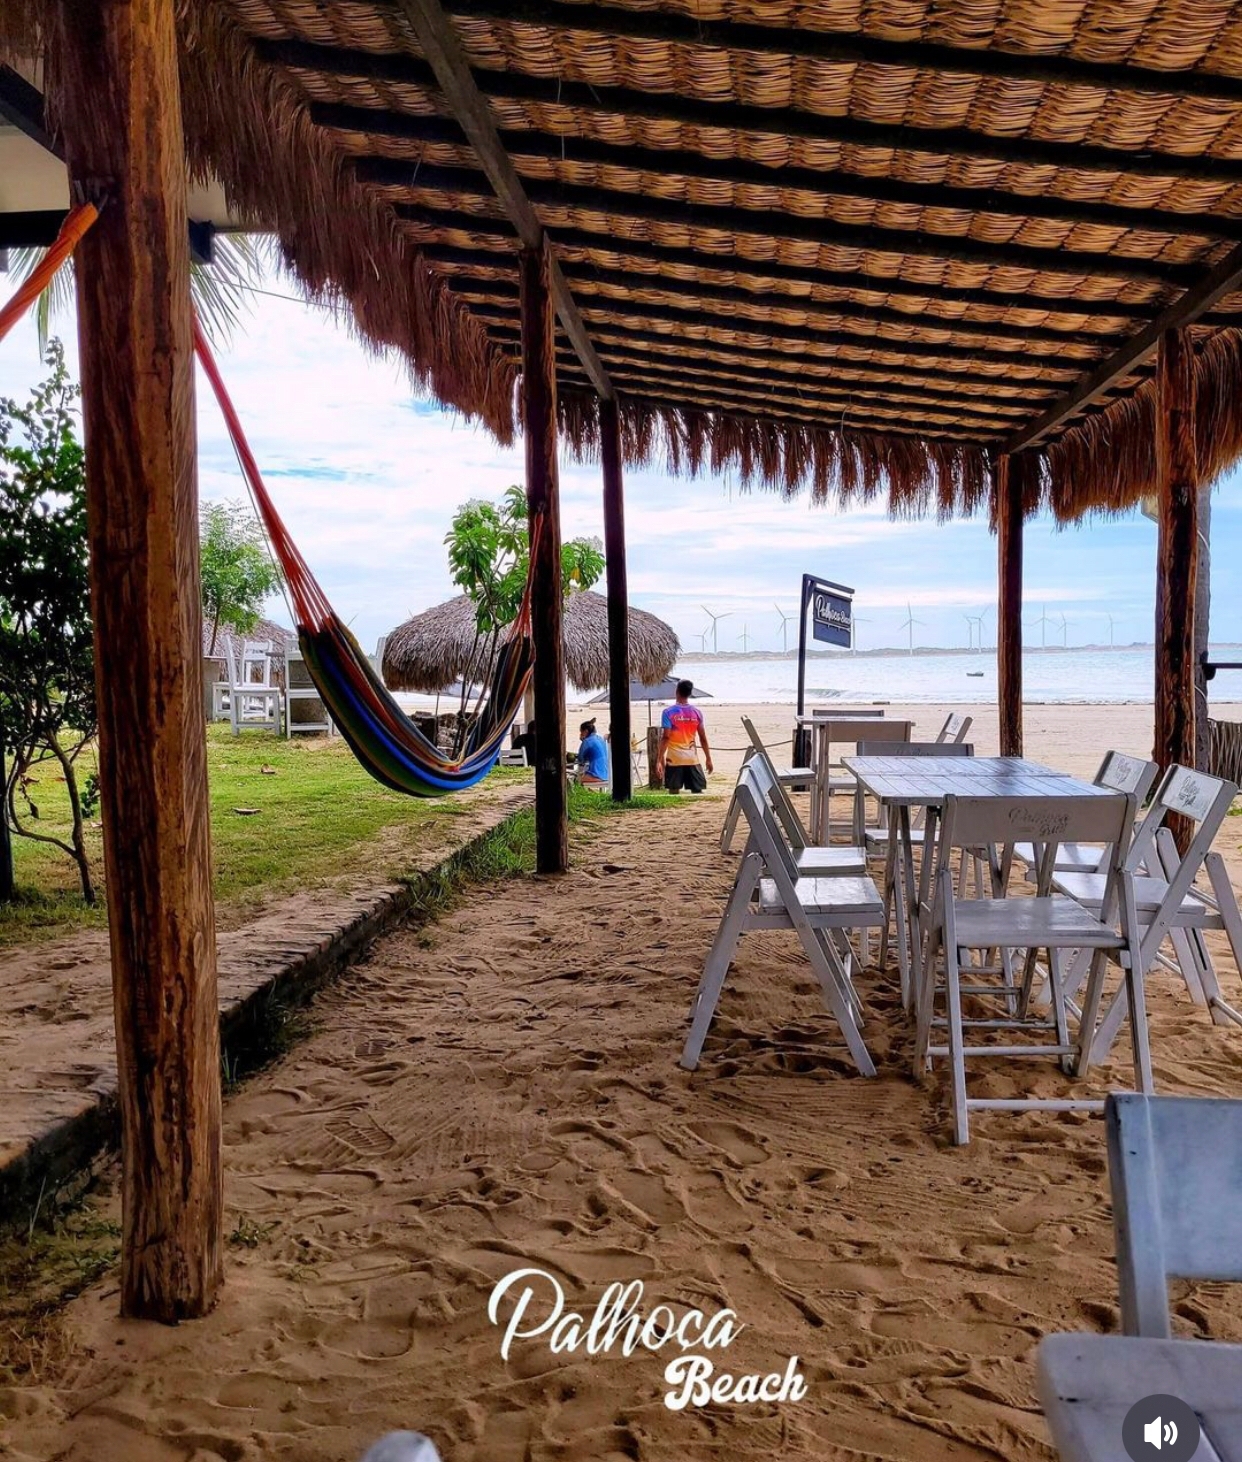 Ótima opção de barraca de praia próxima ao centro de Icaraizinho.